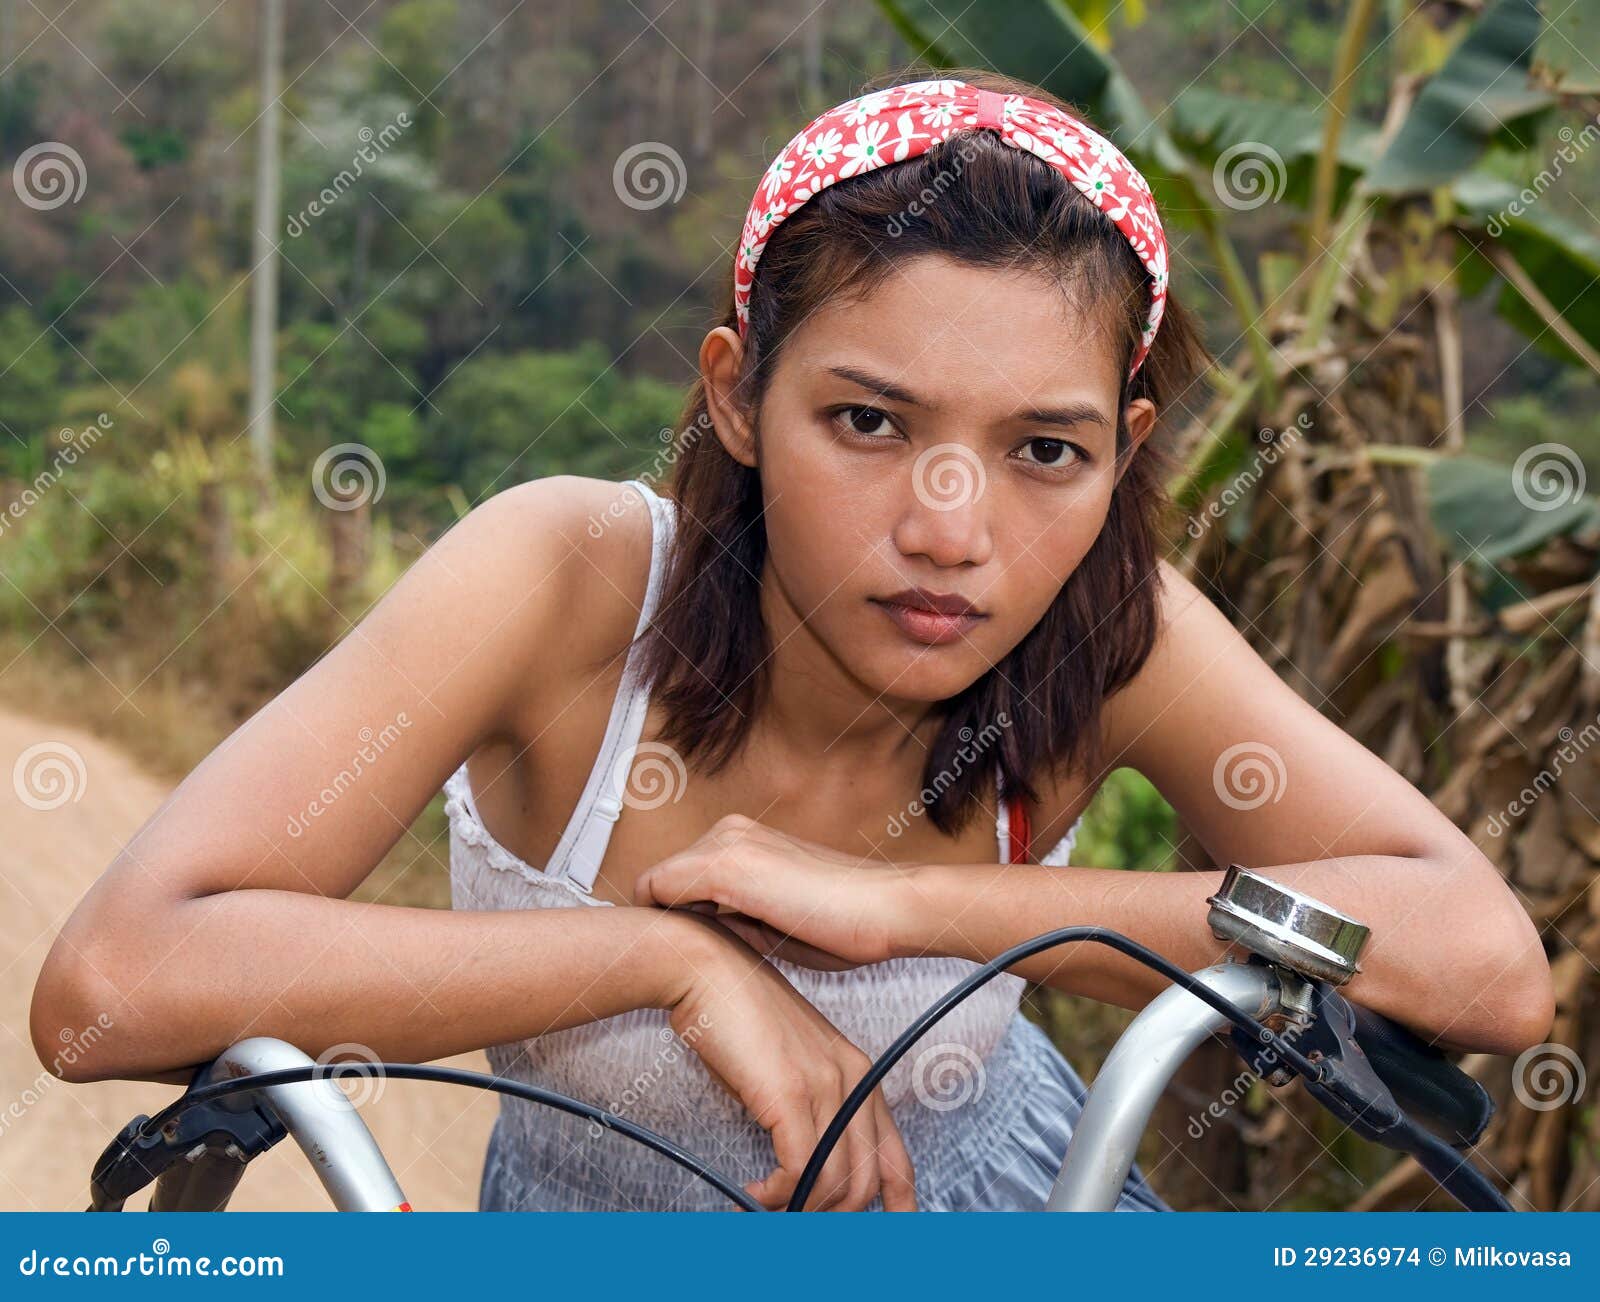 自行车女孩 免费图片 - Public Domain Pictures